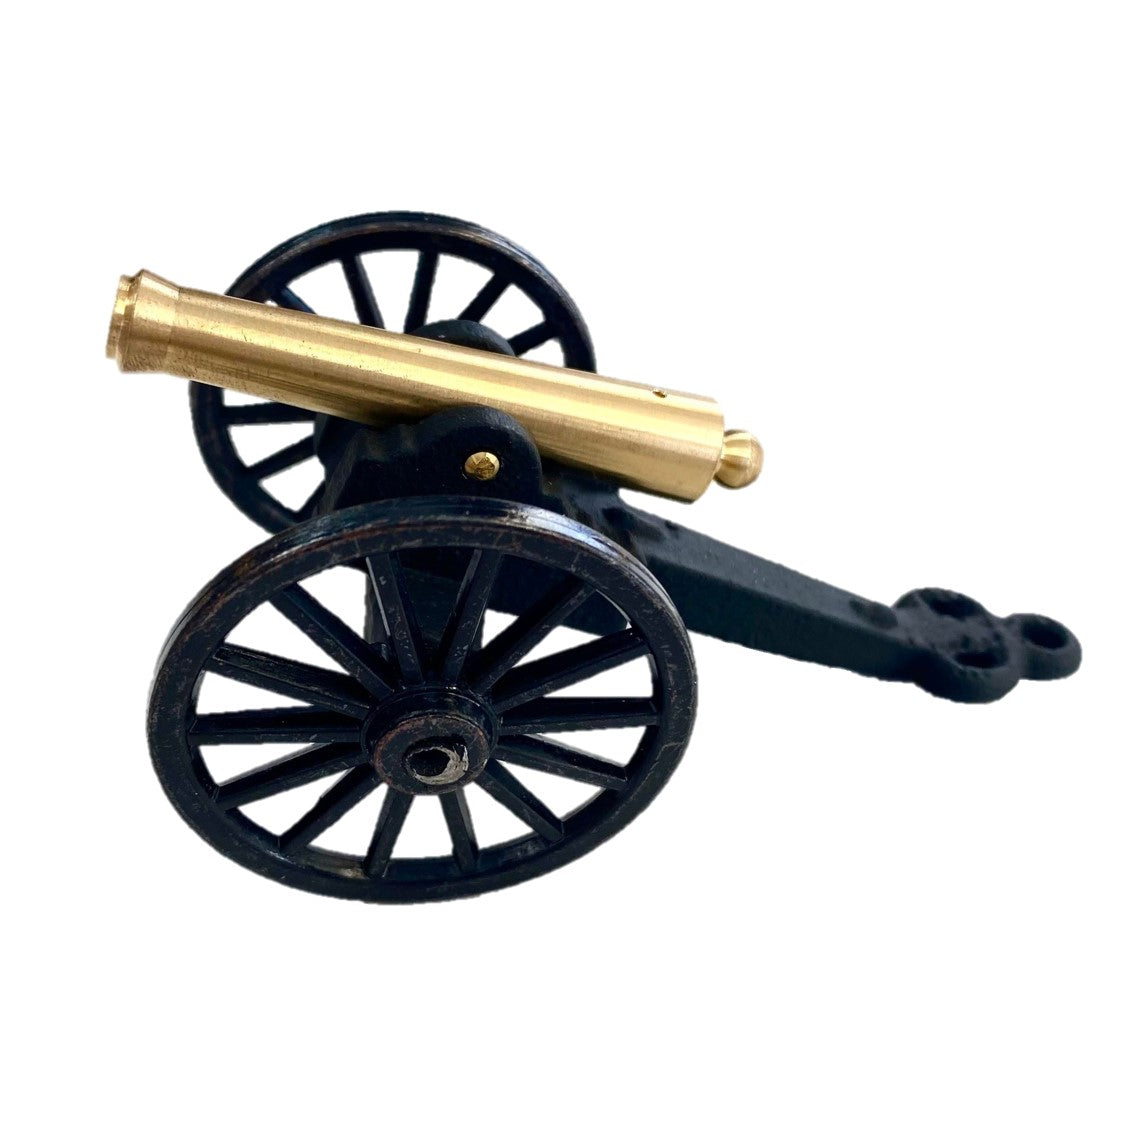 Cannon - Civil War 12lb. Napoleon Cannon (large)